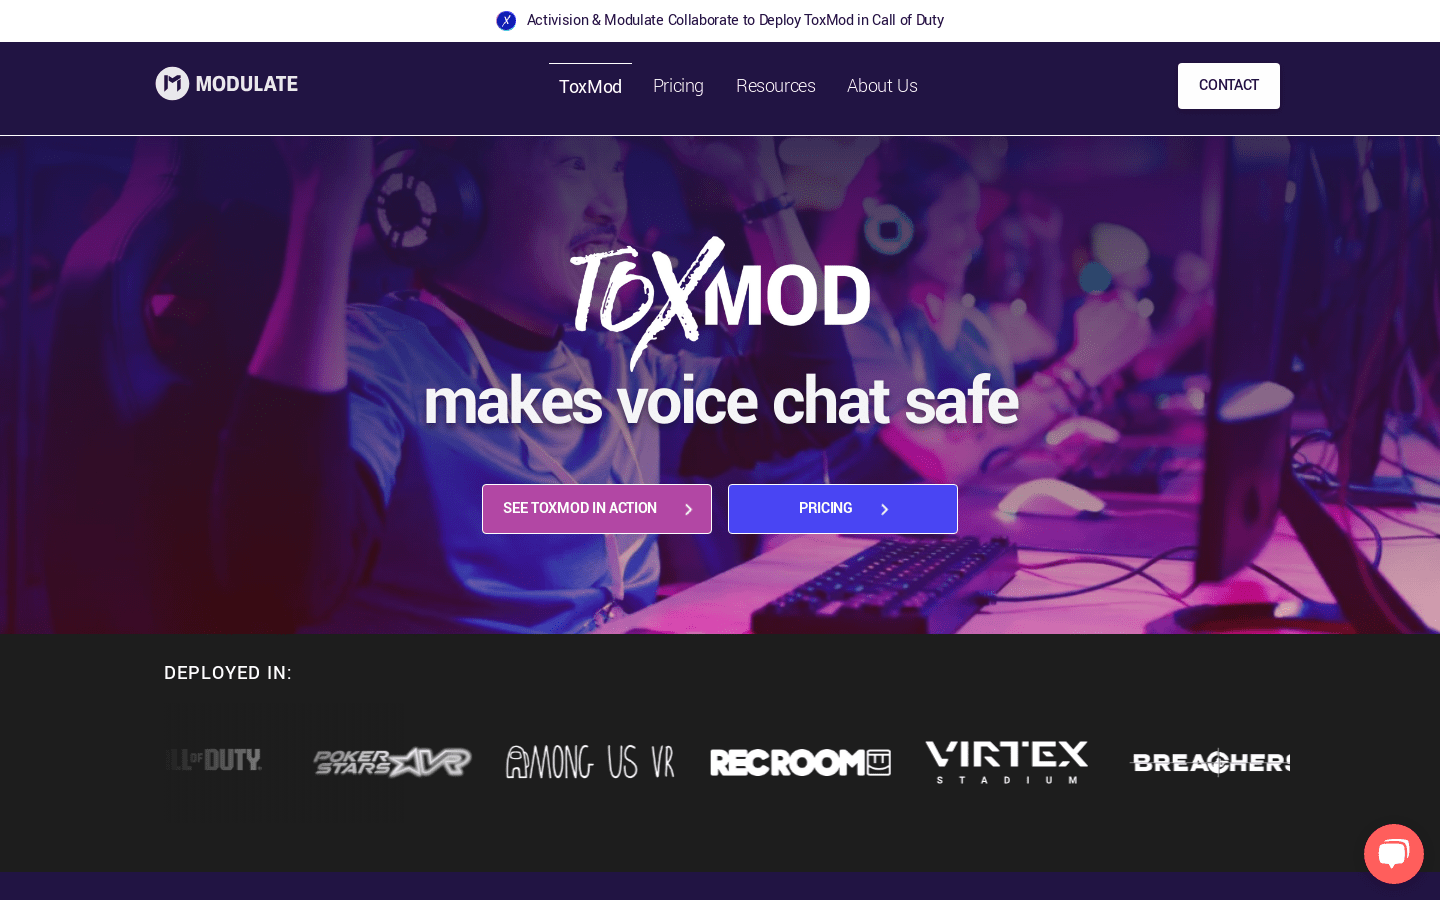 ToxMod